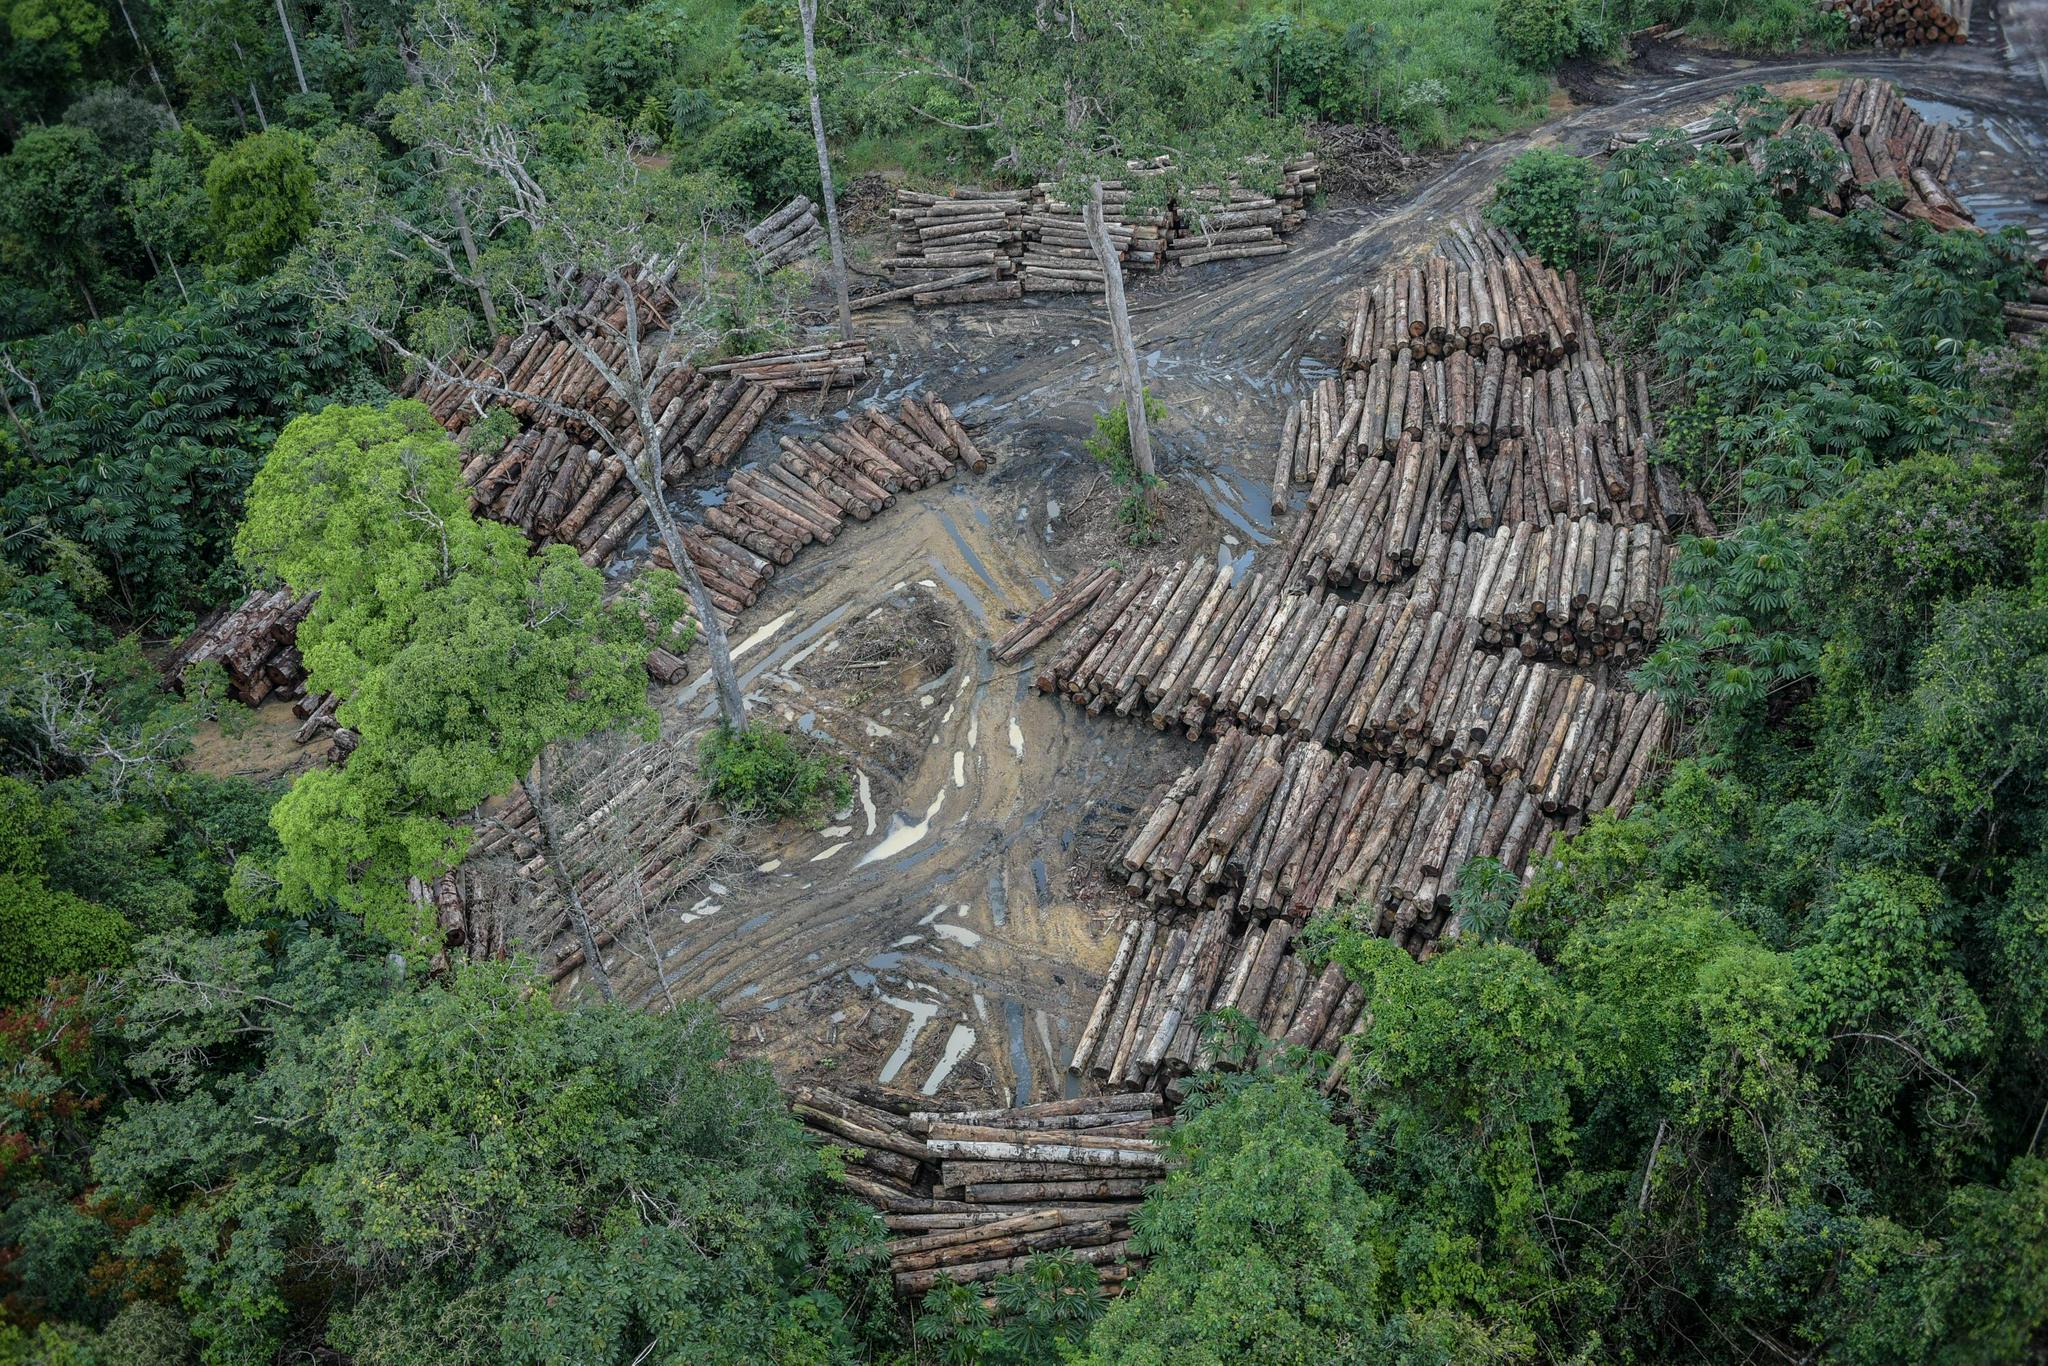 亚马孙地区今年前10个月毁林面积较去年同期增长33%